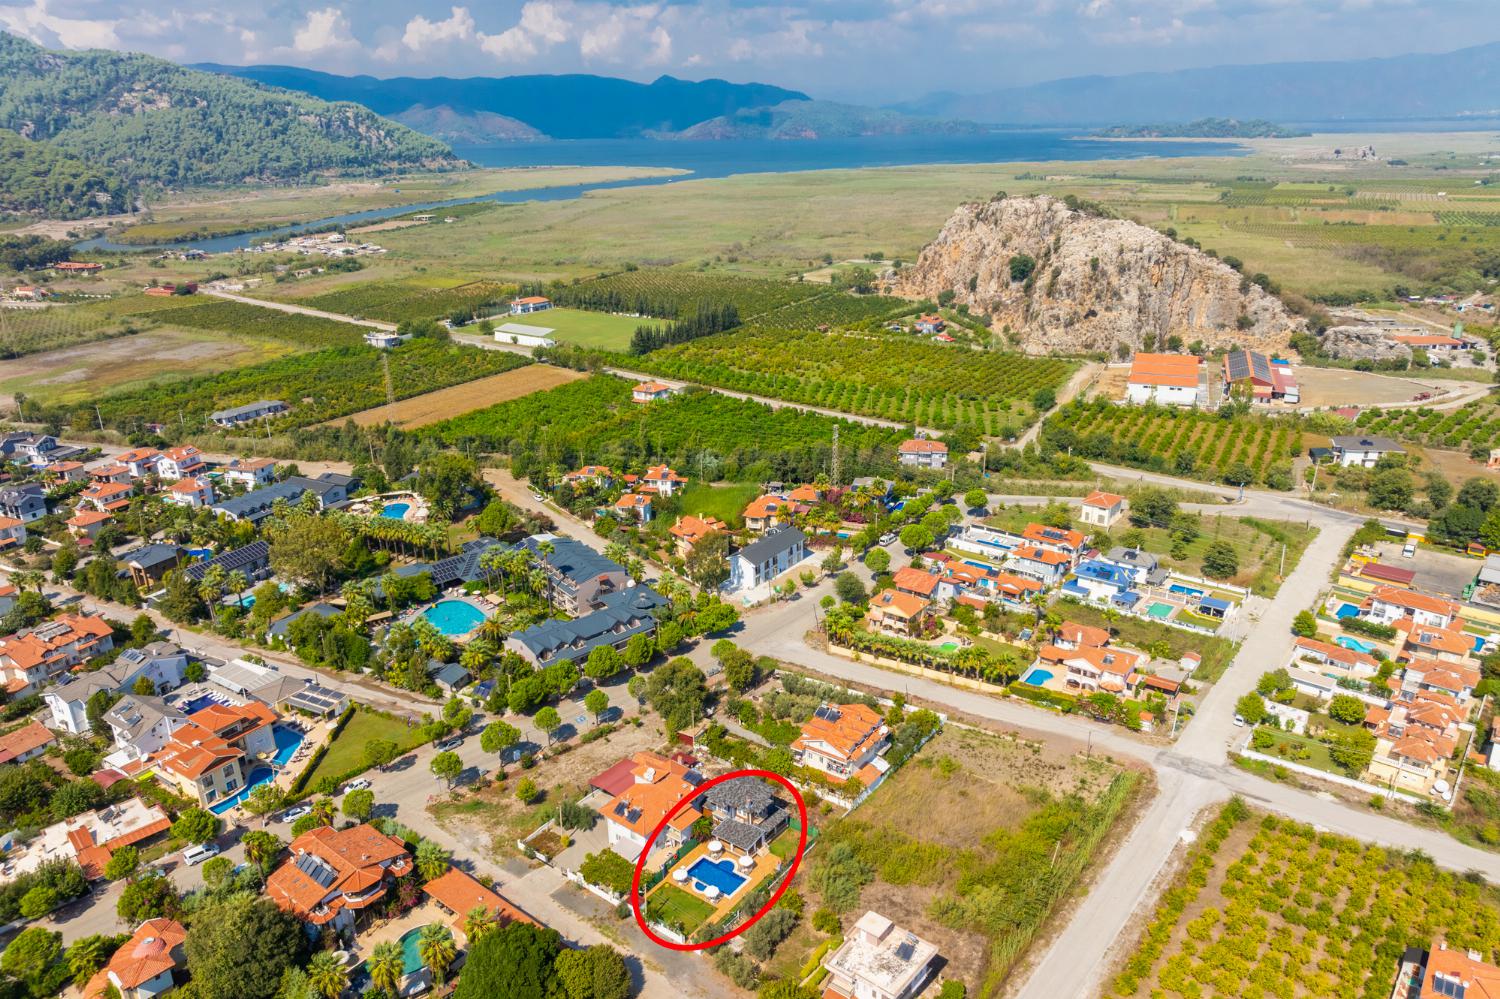 Aerial view showing location of Villa Delfin